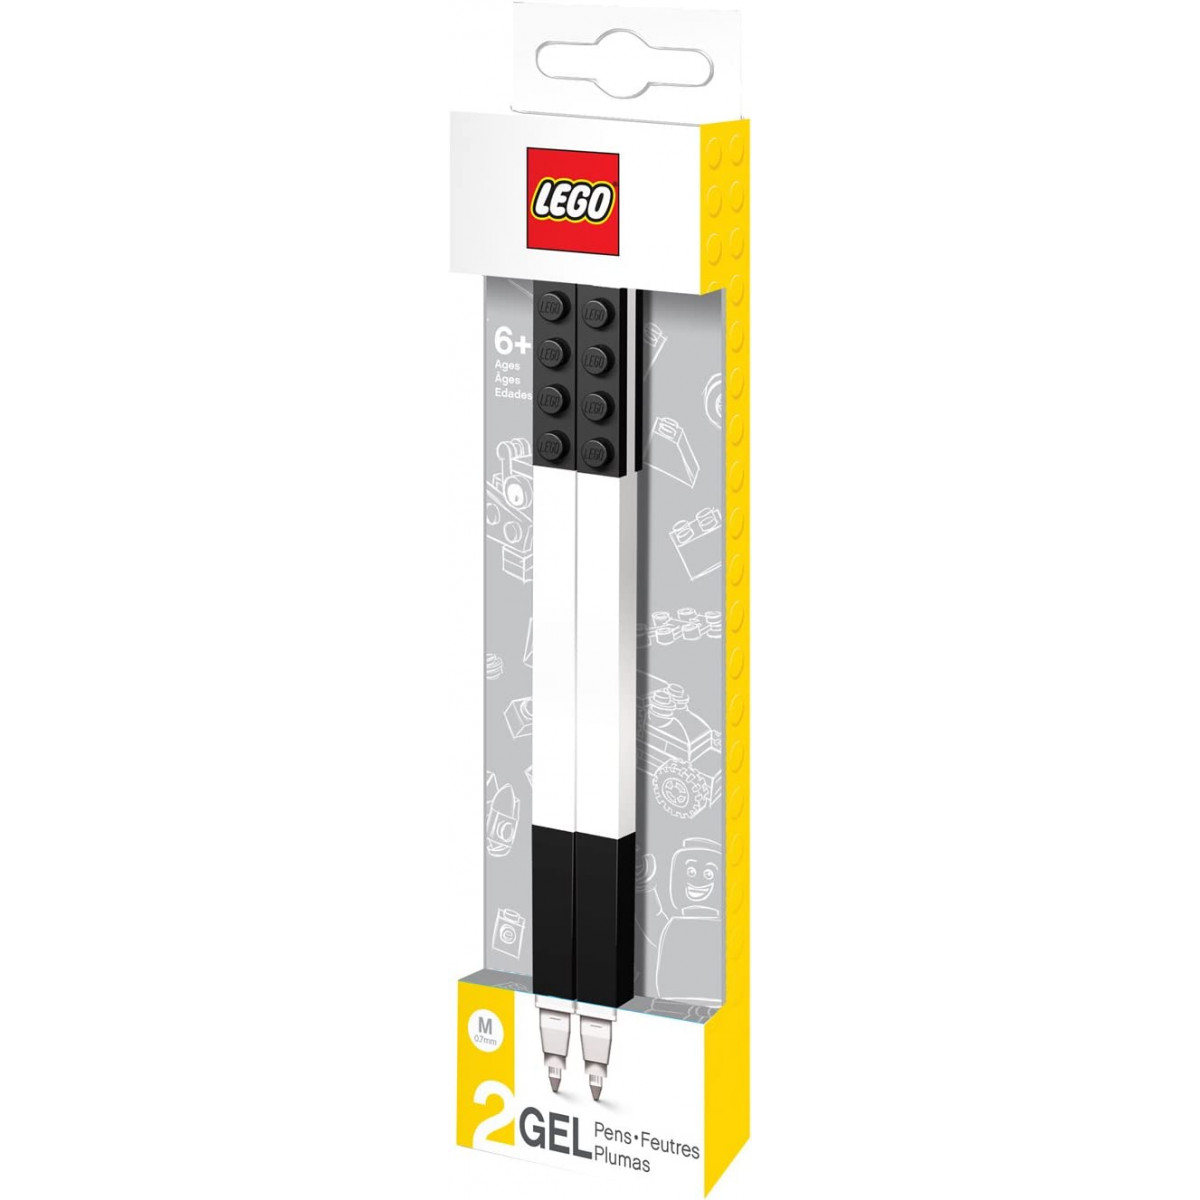 Lego 51505 - 2 Gel pen black